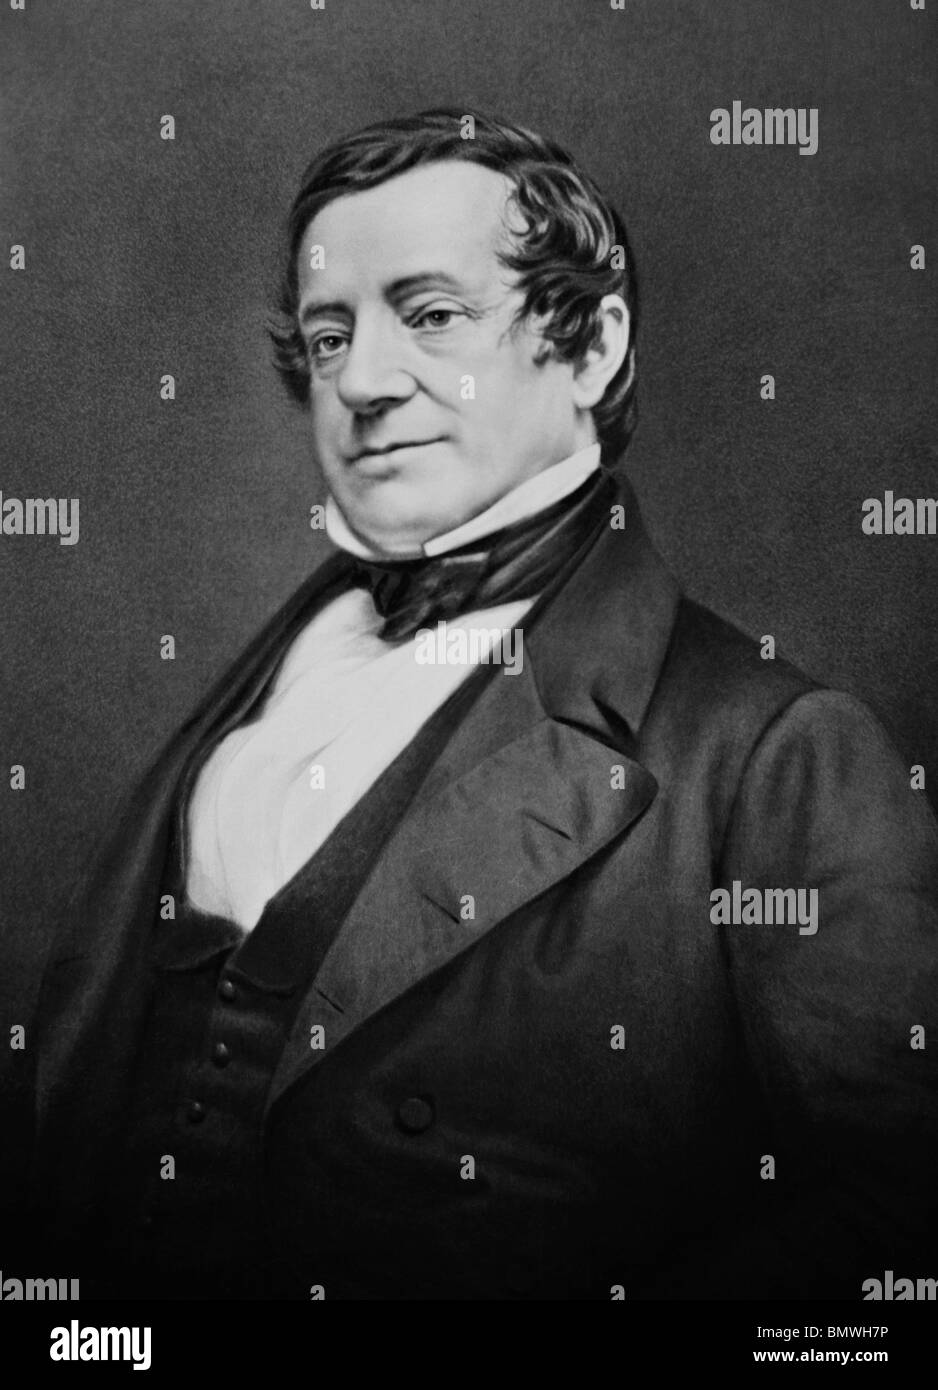 Daguerreotypie-Portrait-Foto ca. 1850 s der amerikanische Autor, Essayist, Biograph und Historiker Washington Irving (1783-1859). Stockfoto